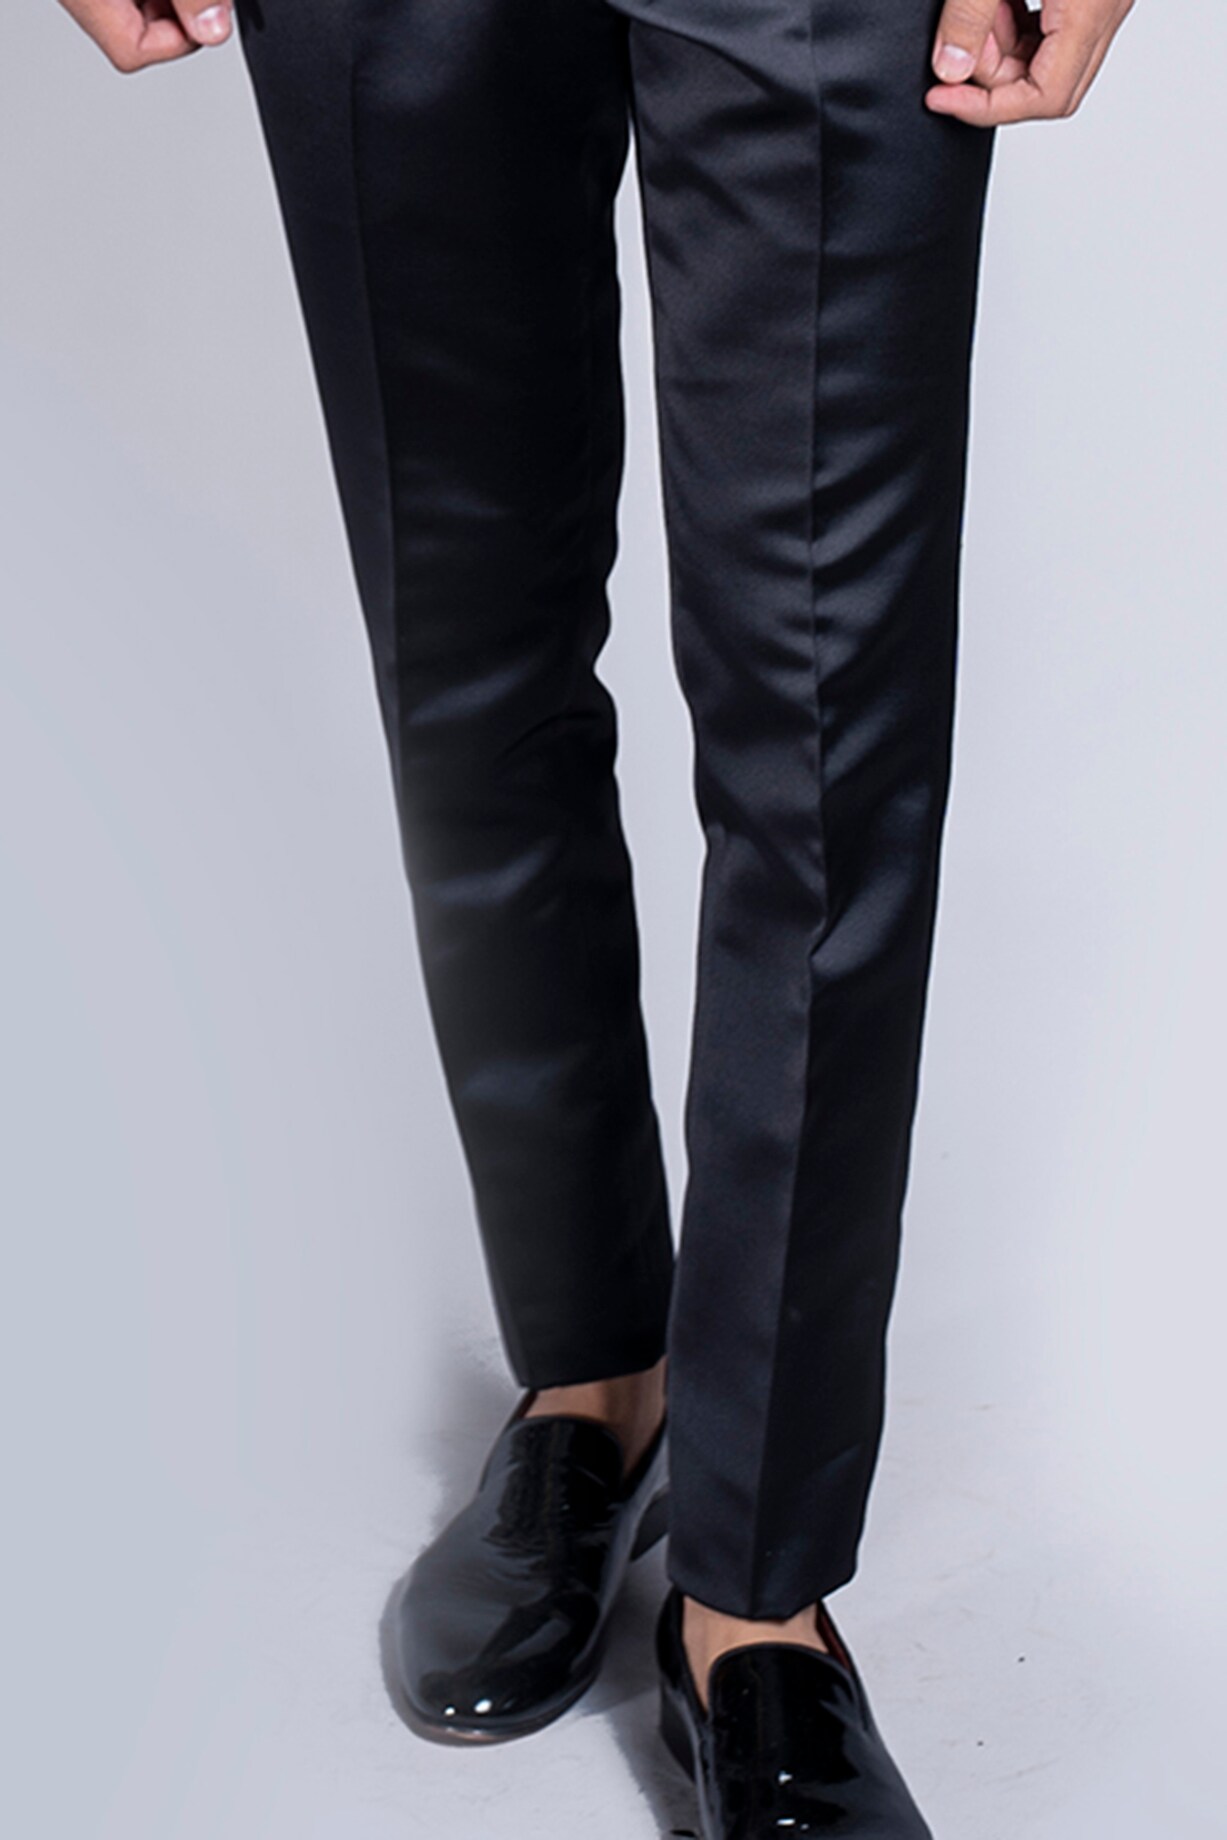 Teal Blue Italian Velvet Tuxedo Set by Kanishk Mehta Designs